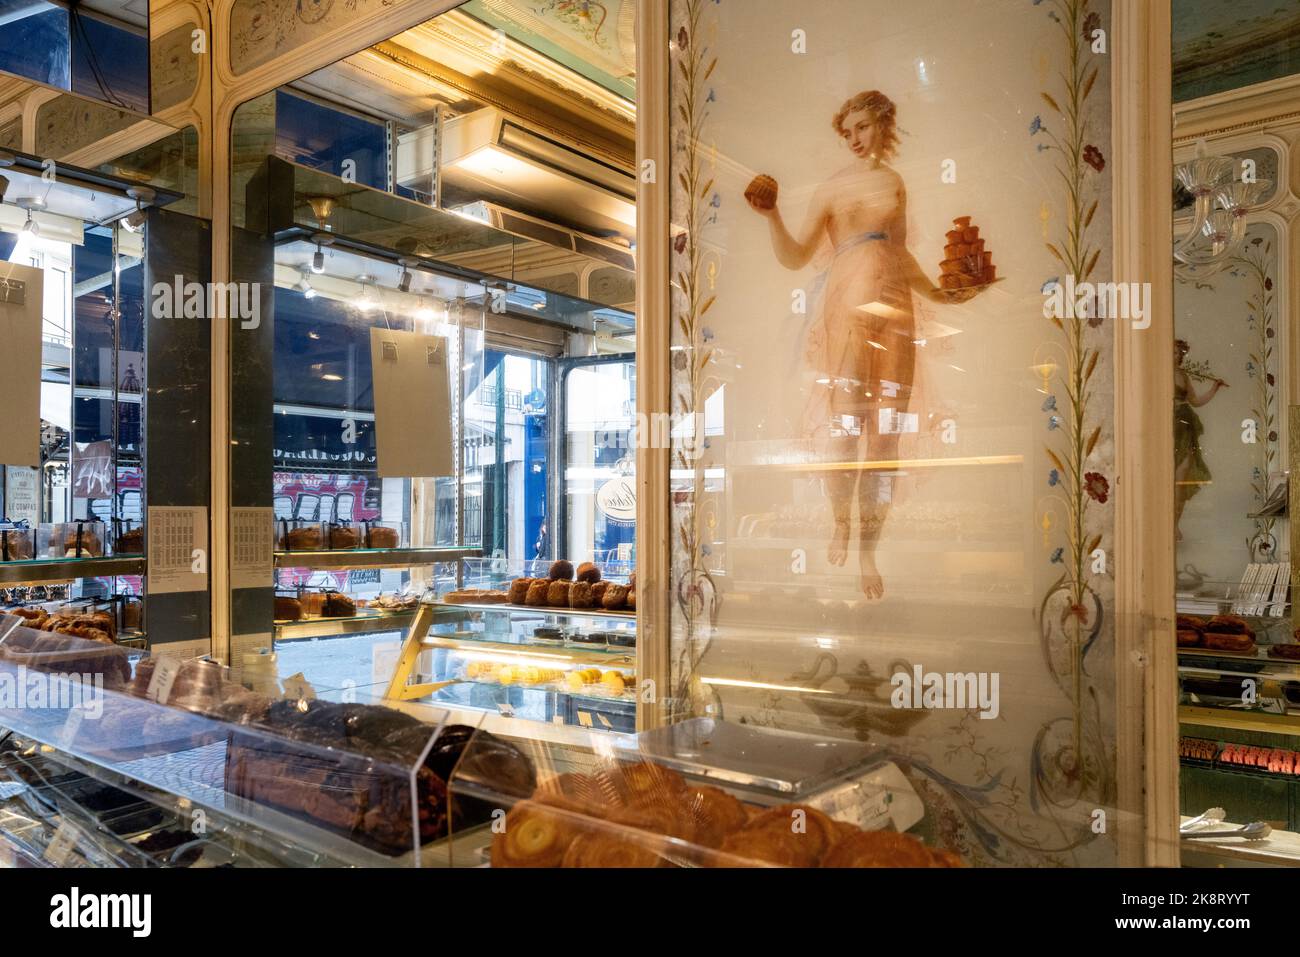 L'intérieur du magasin Stohrer Patisserie avec une vieille peinture d'une fille tenant des gâteaux dans ses mains, Paris, France Banque D'Images